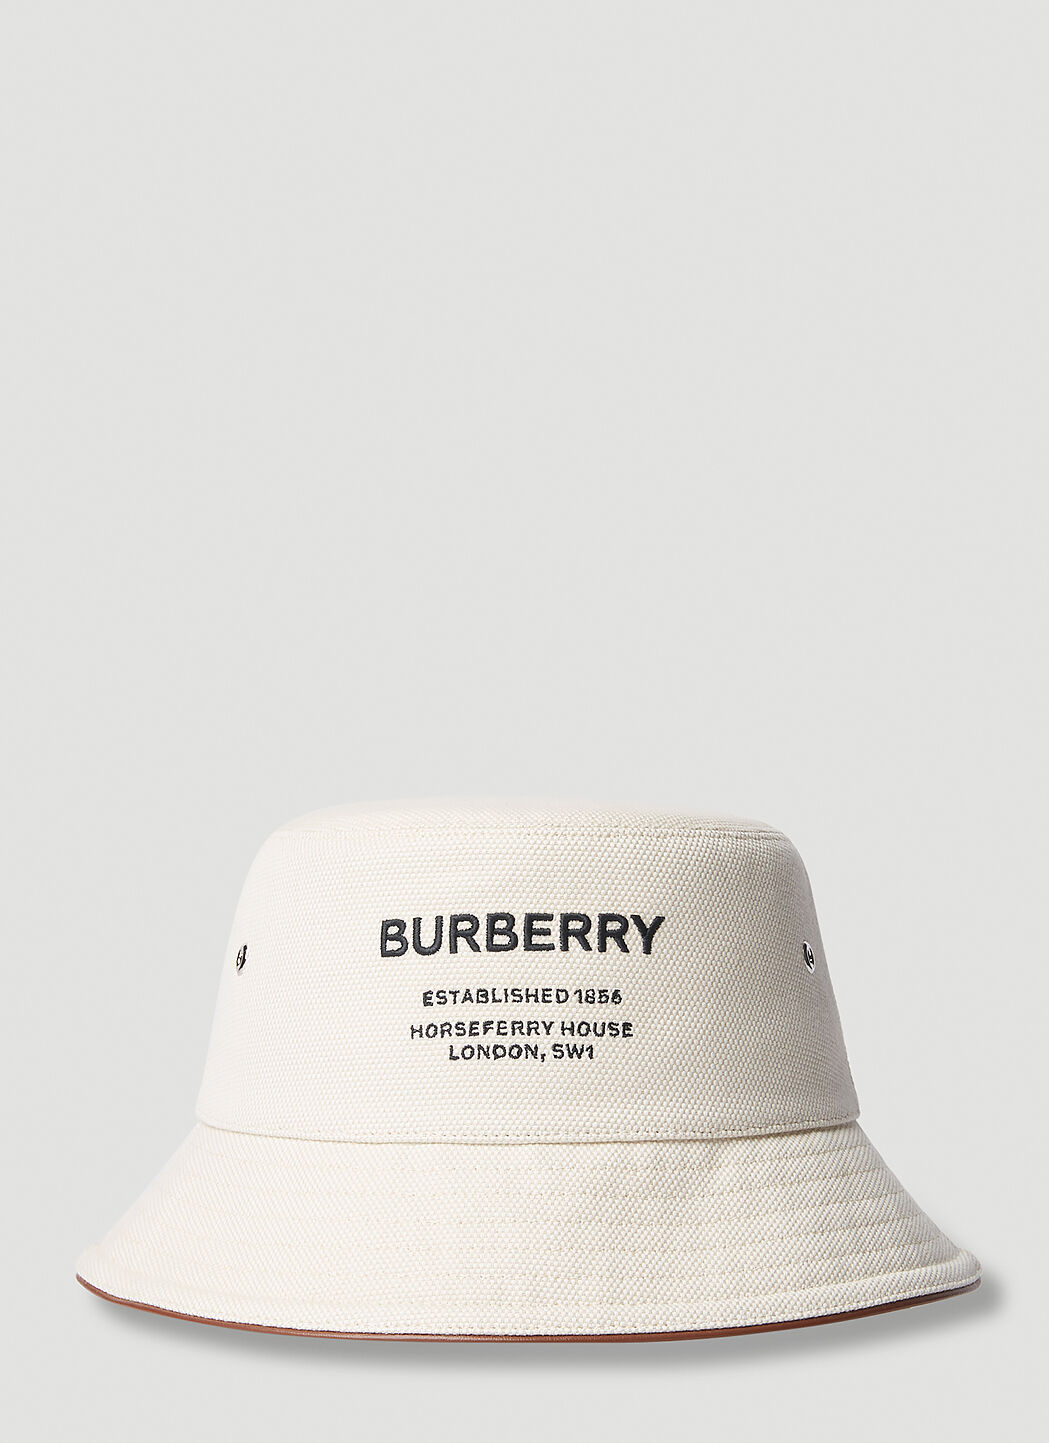 Burberry Horseferry Bucket Hat Beige bur0353006